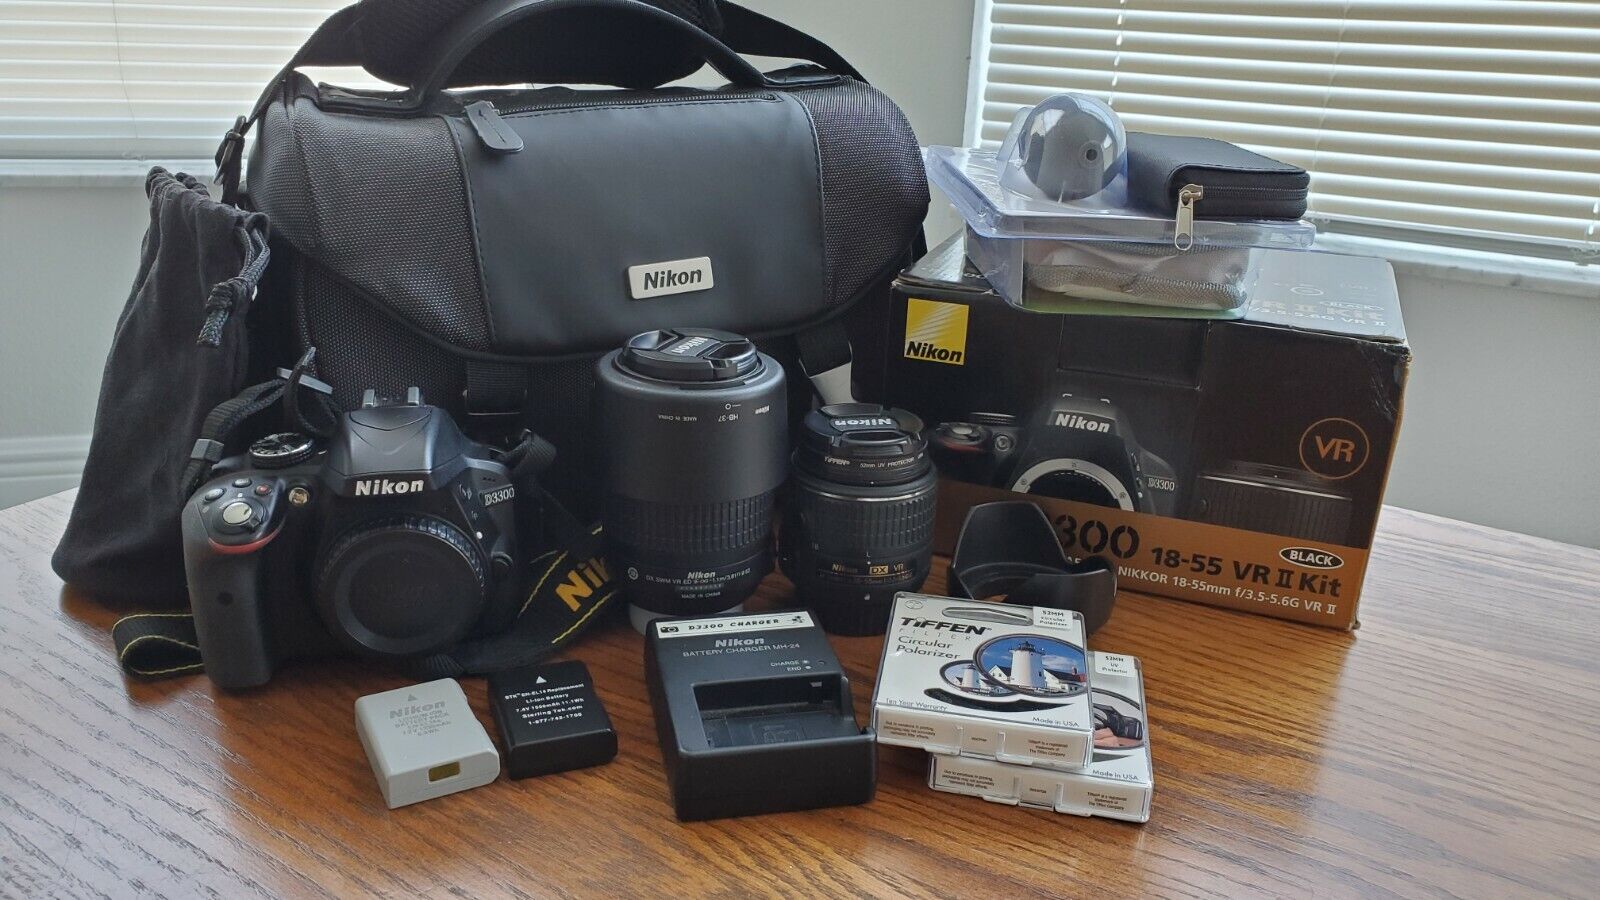 Nikon D3300 24.2MP Digital SLR Camera Kit AF-S DX 18-55mm and 55-200mm +more